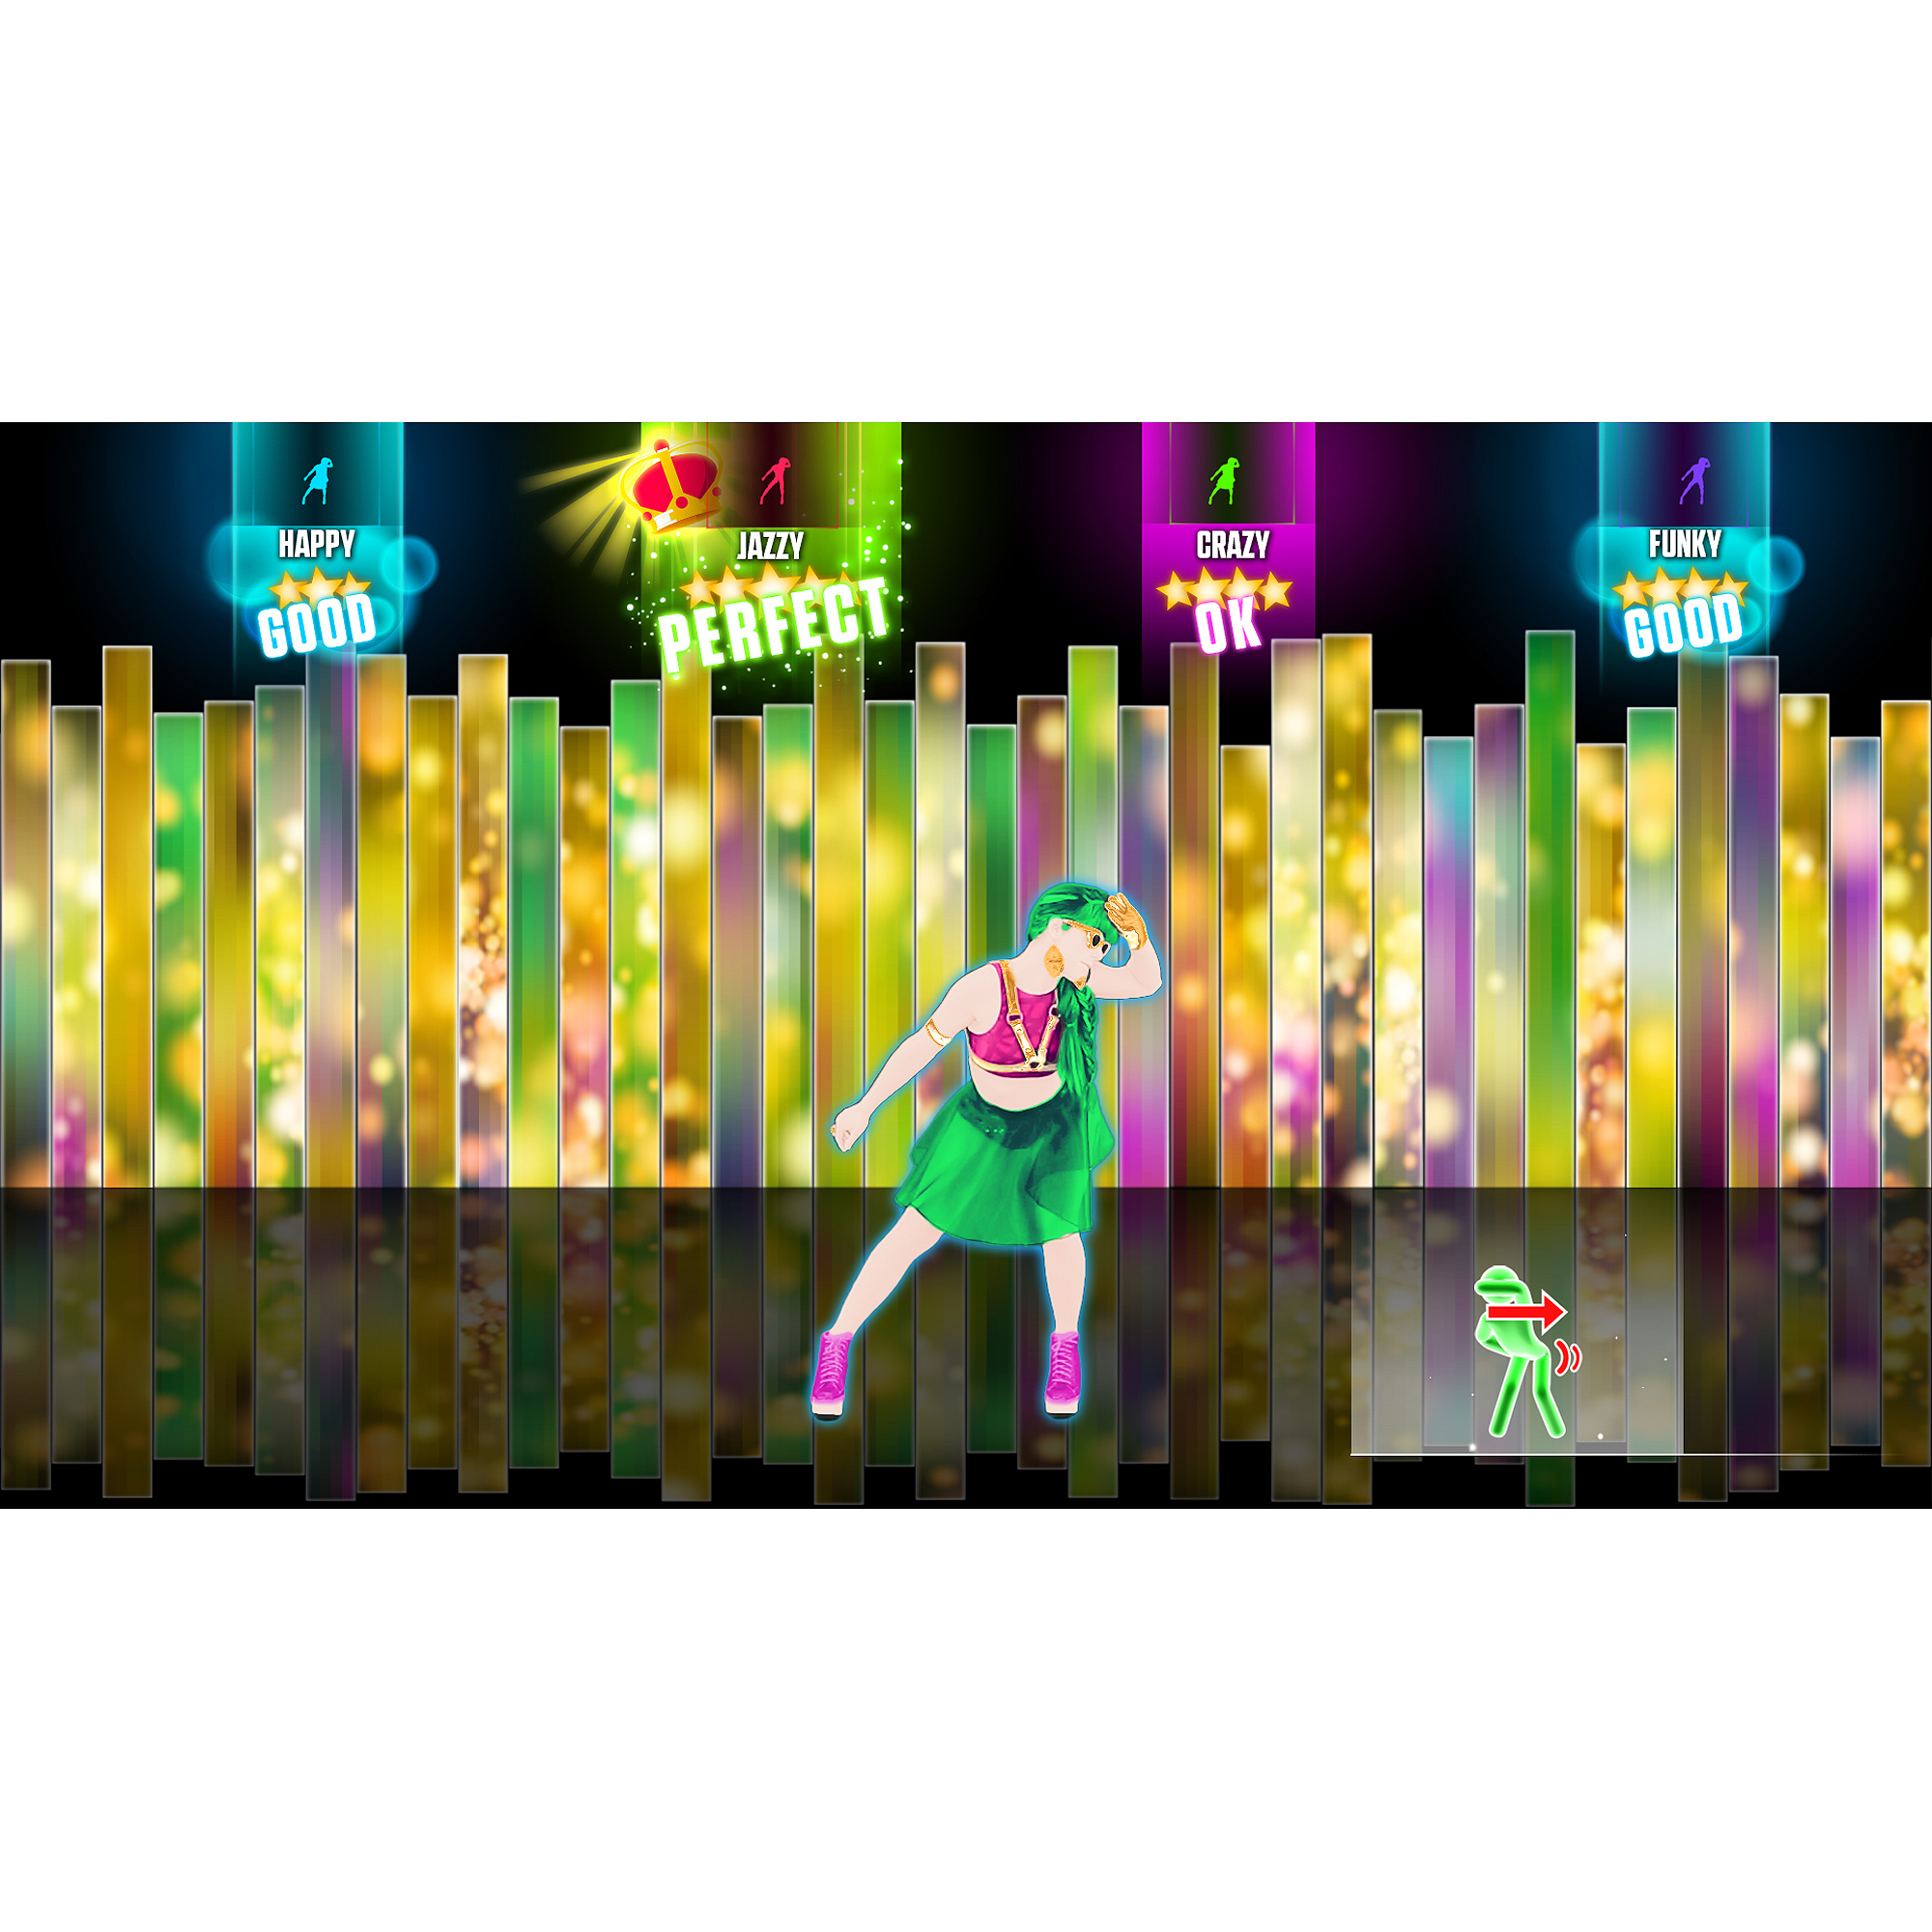 Just Dance 2015 (Xbox 360) Ubisoft, 887256301071 - image 5 of 5